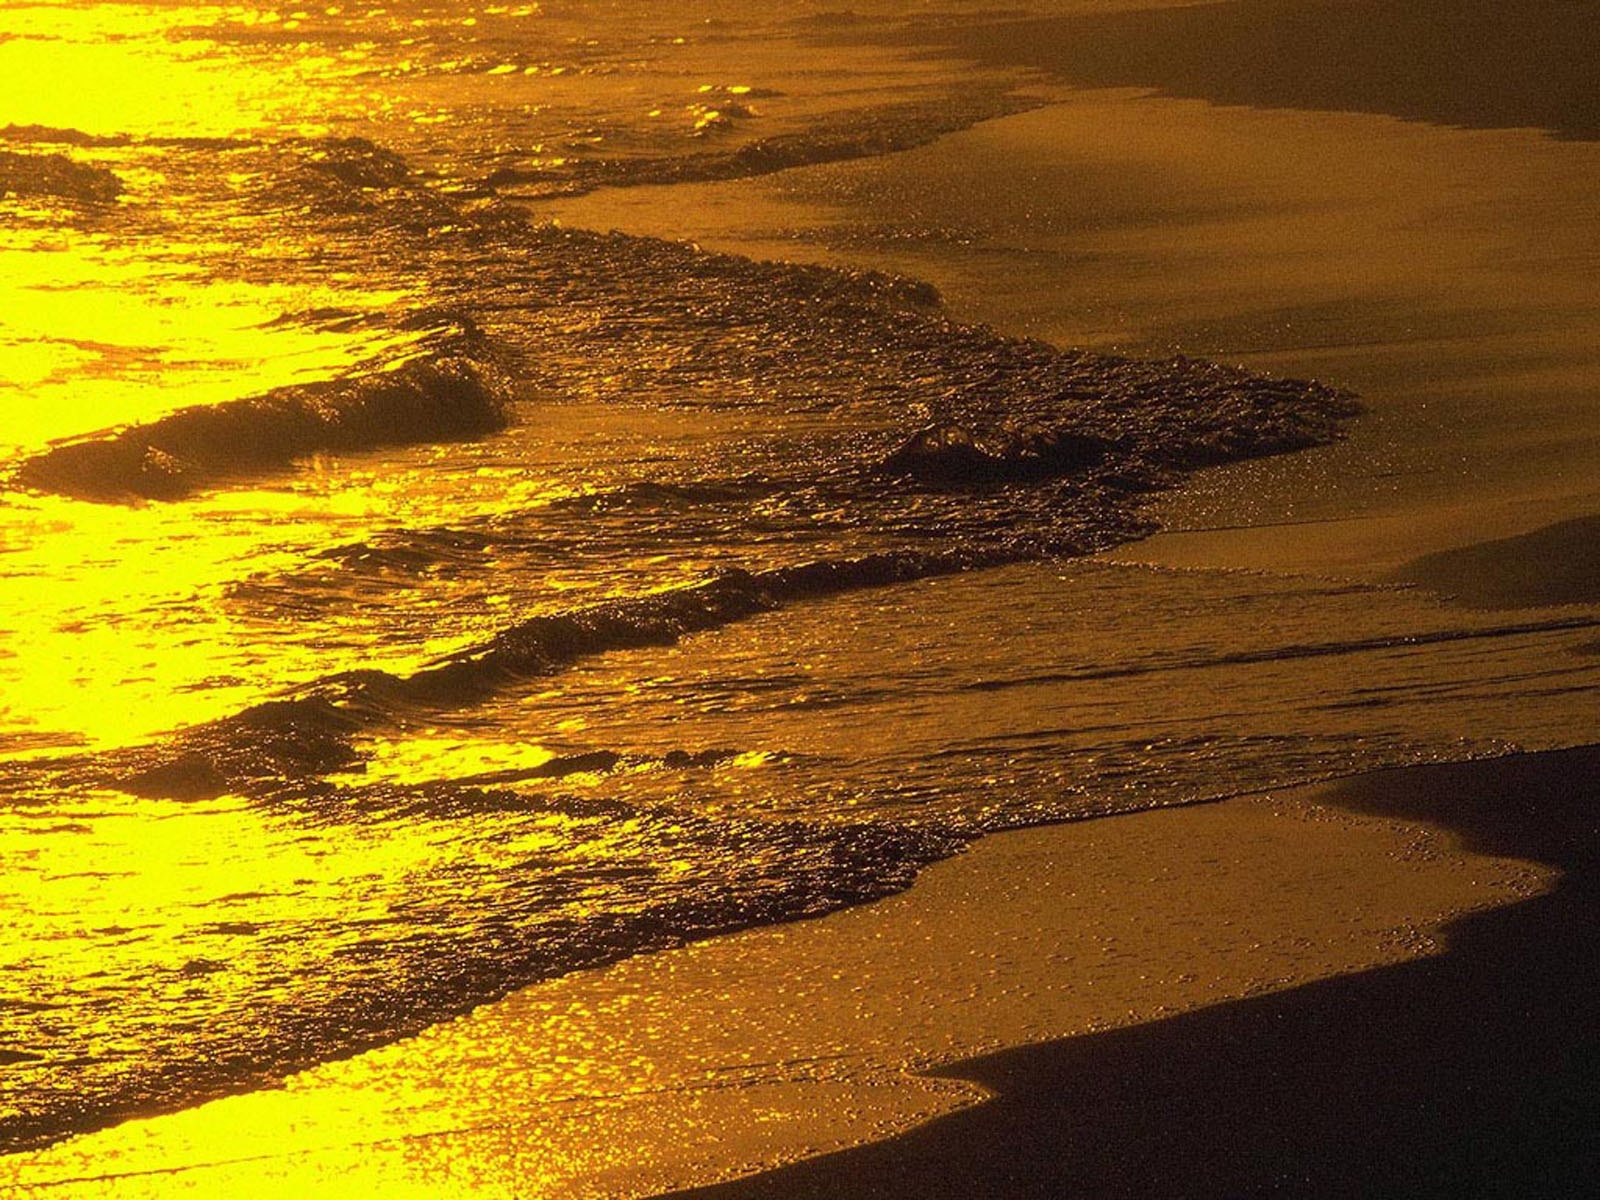 Gold sunset. Золотой закат на море. Море золотой песок. Солнечная дорожка на воде. Золотистое море.